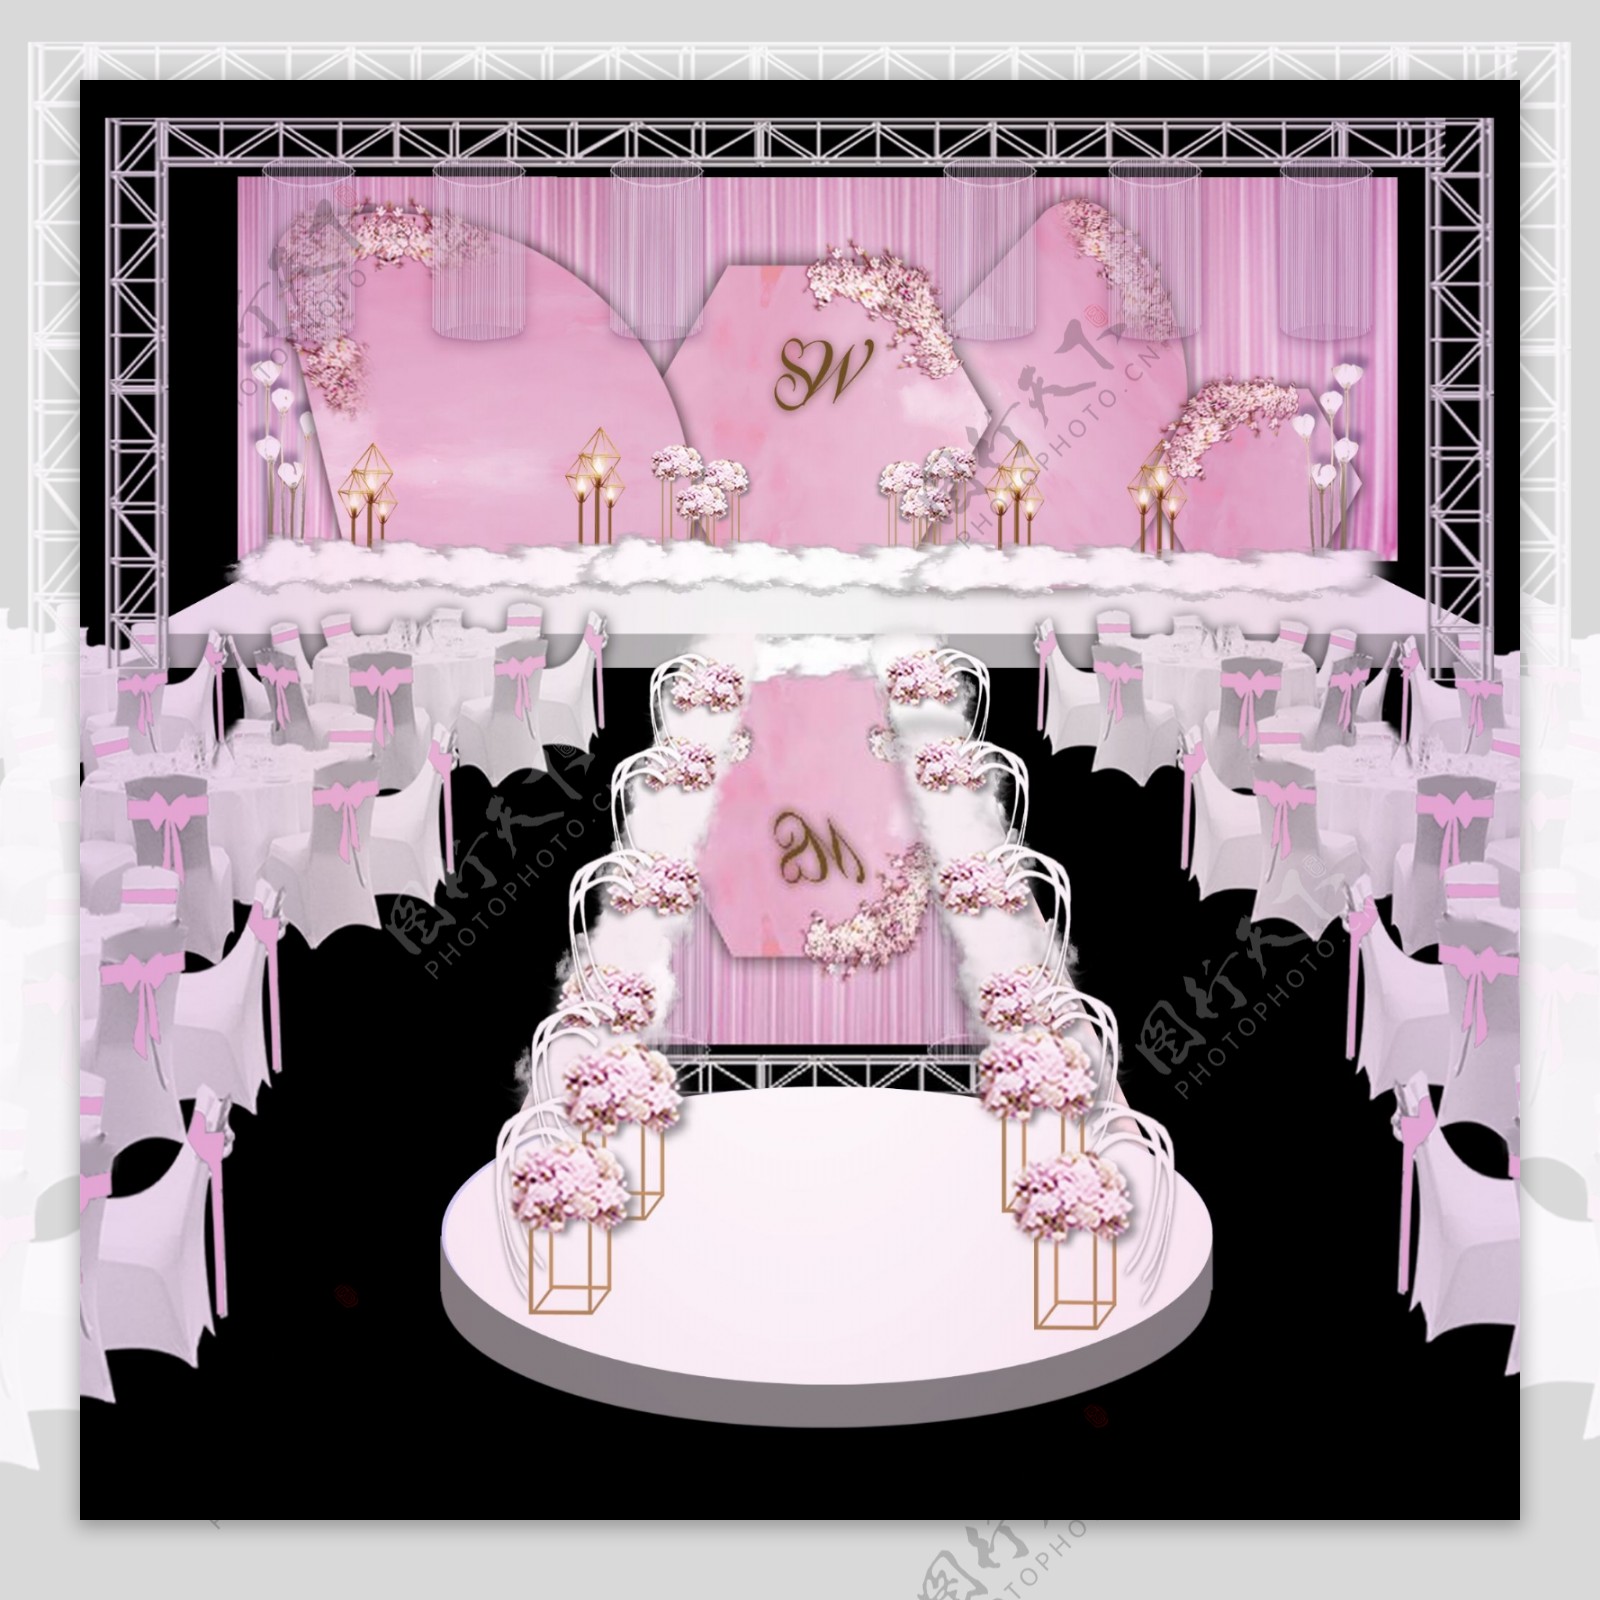 婚礼效果图粉色西式婚礼背景